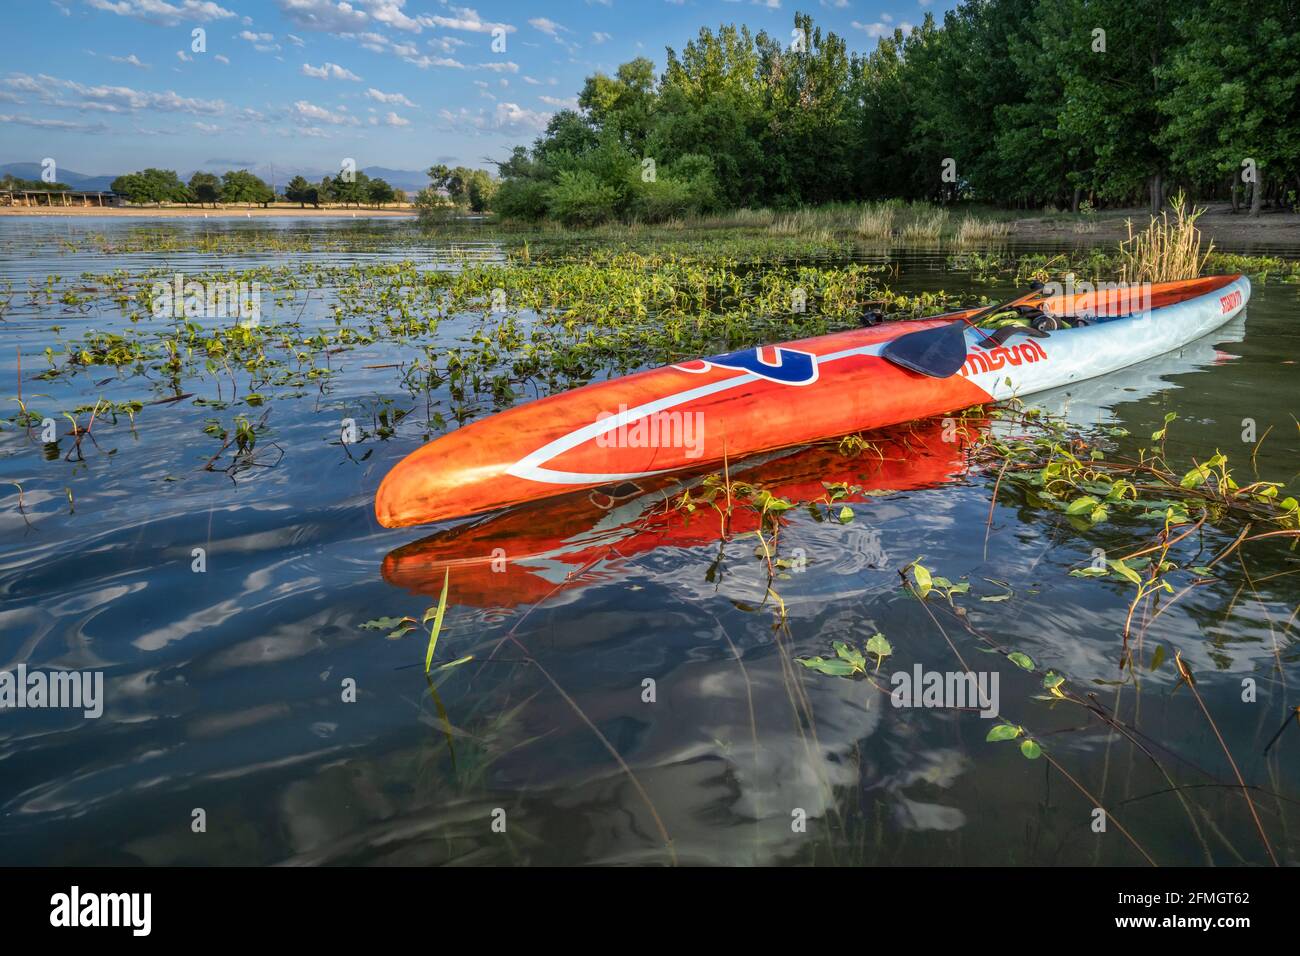 Loveland, CO, USA - 21. Juli 2020: Ein langes und enges Stand Up Paddleboard Stealth 17'6 von Mistral am Boyd Lake, einem beliebten Bootstouren- und Freizeitsportler Stockfoto